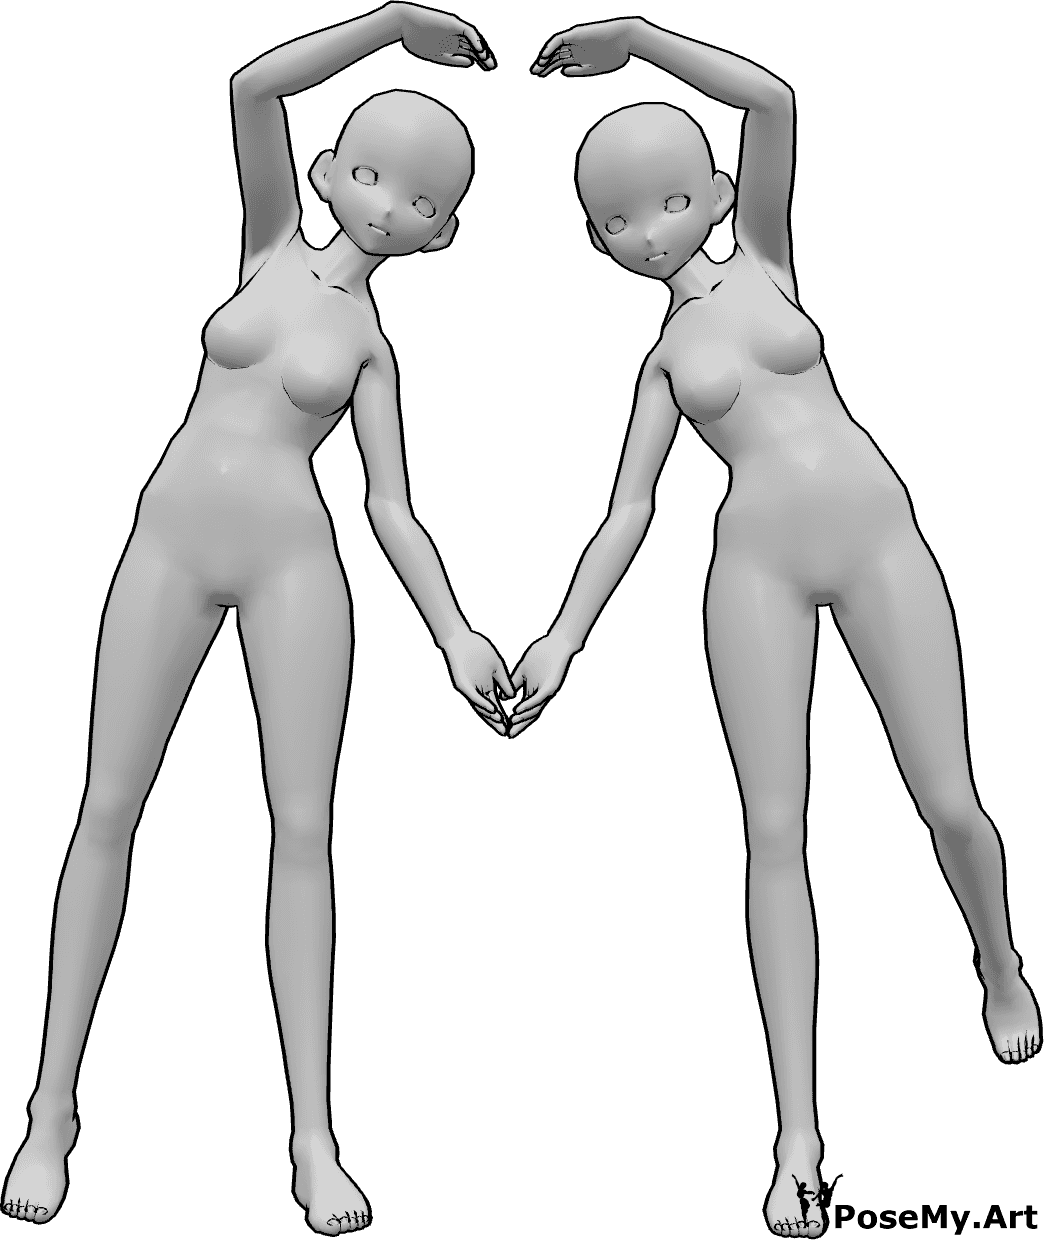 Referência de poses- Pose de coração de anime - Duas mulheres anime estão a fazer um coração com os braços